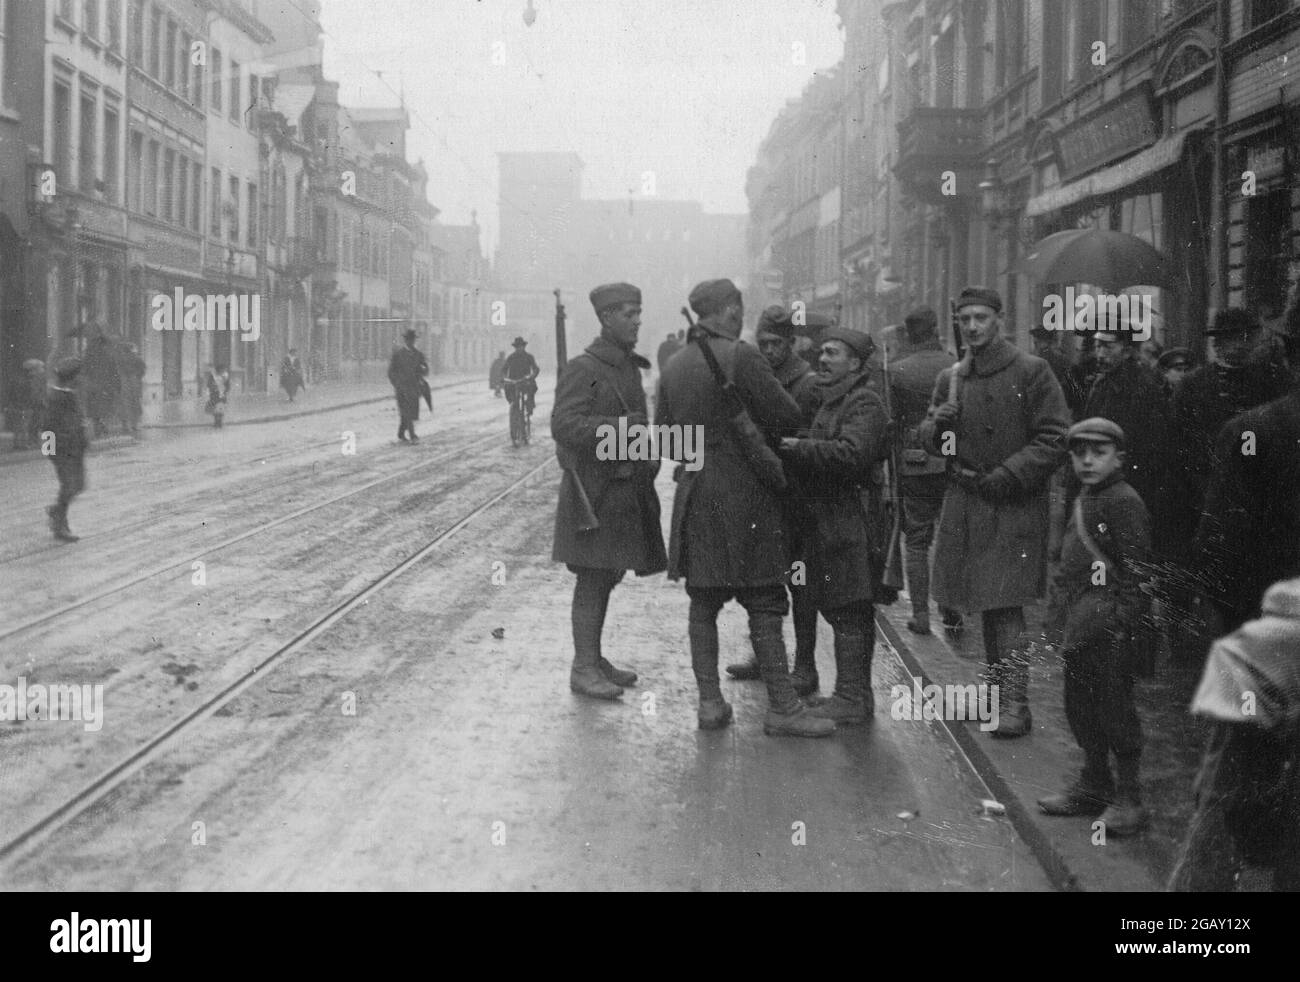 TREVES, DEUTSCHLAND - 04. Mai 1919 - Armee der Besatzung - amerikanische Soldaten in Treves, Deutschland. Die Stadt Trier wäre auch als Treves in E bekannt gewesen Stockfoto